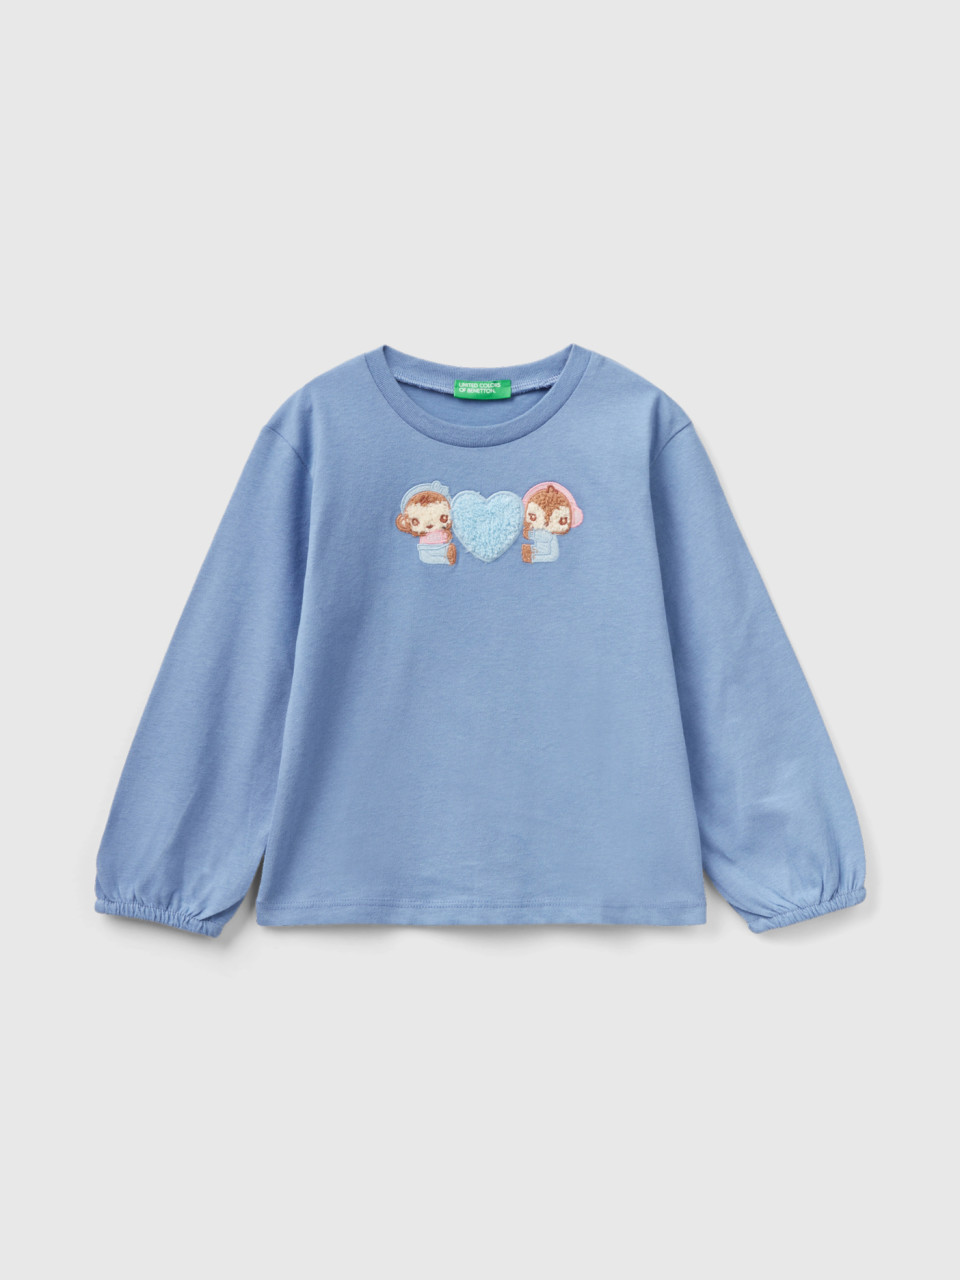 Benetton, T-shirt In Warm Cotton, Light Blue, Kids